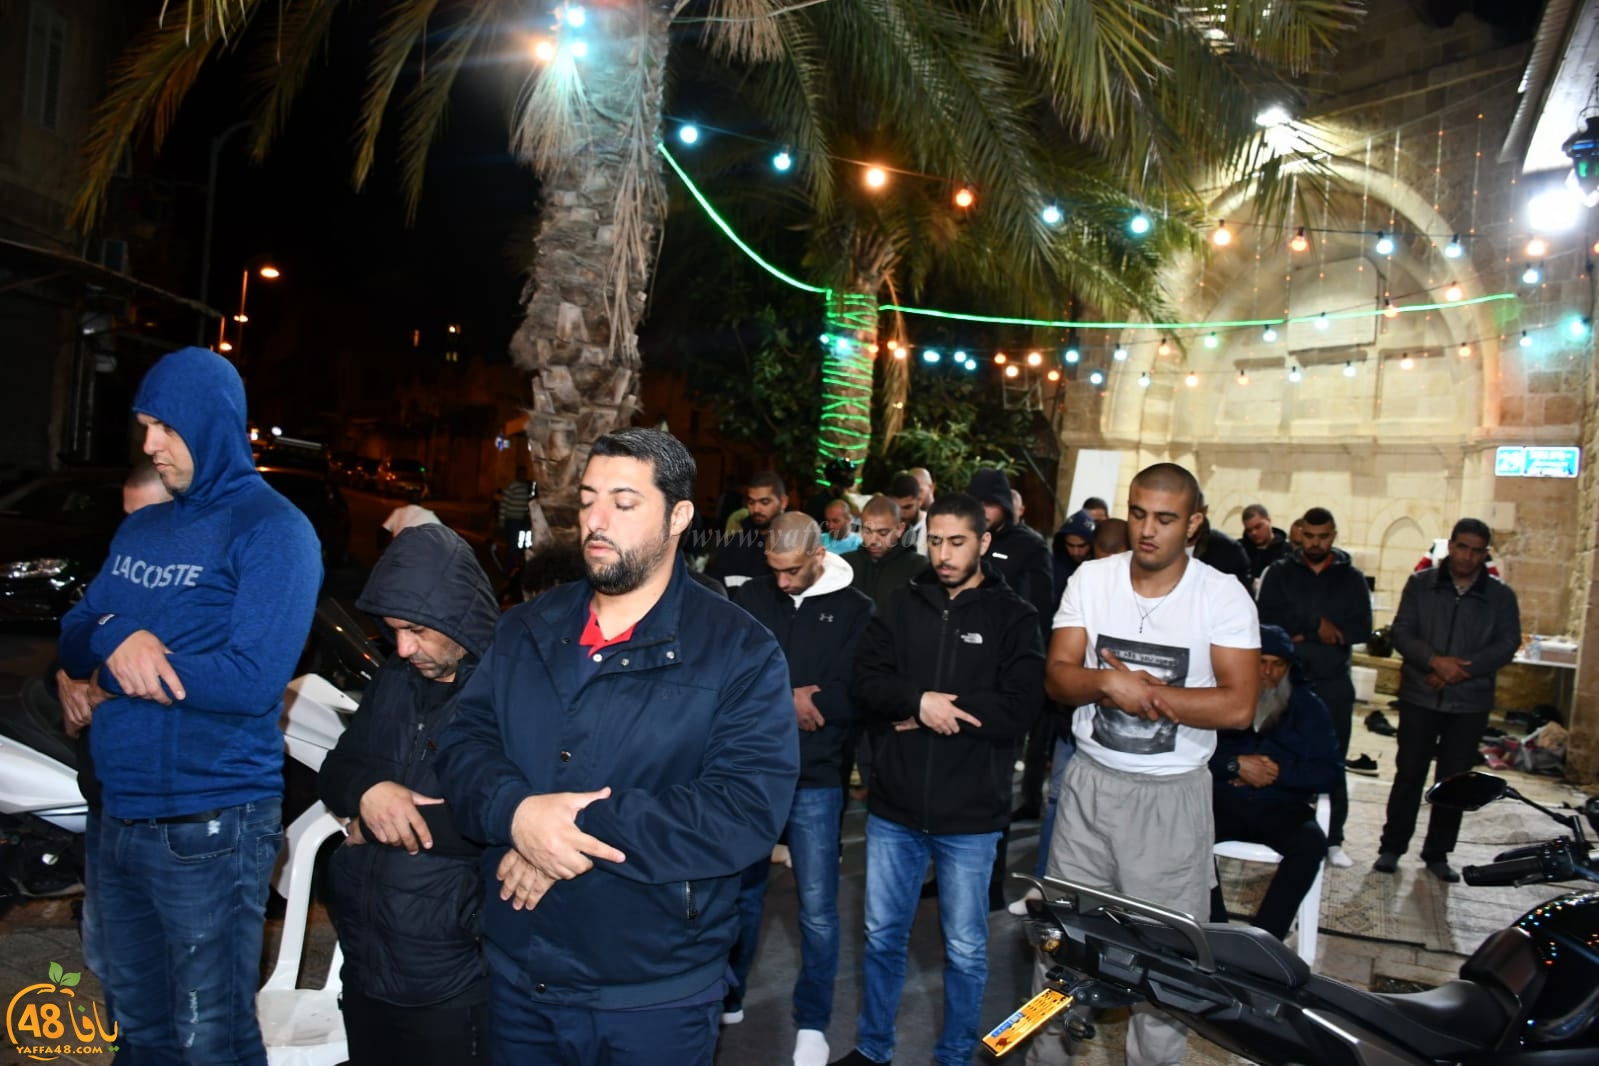 فيديو وصور: شعائر صلاة التراويح من مسجد السكسك بمدينة يافا 